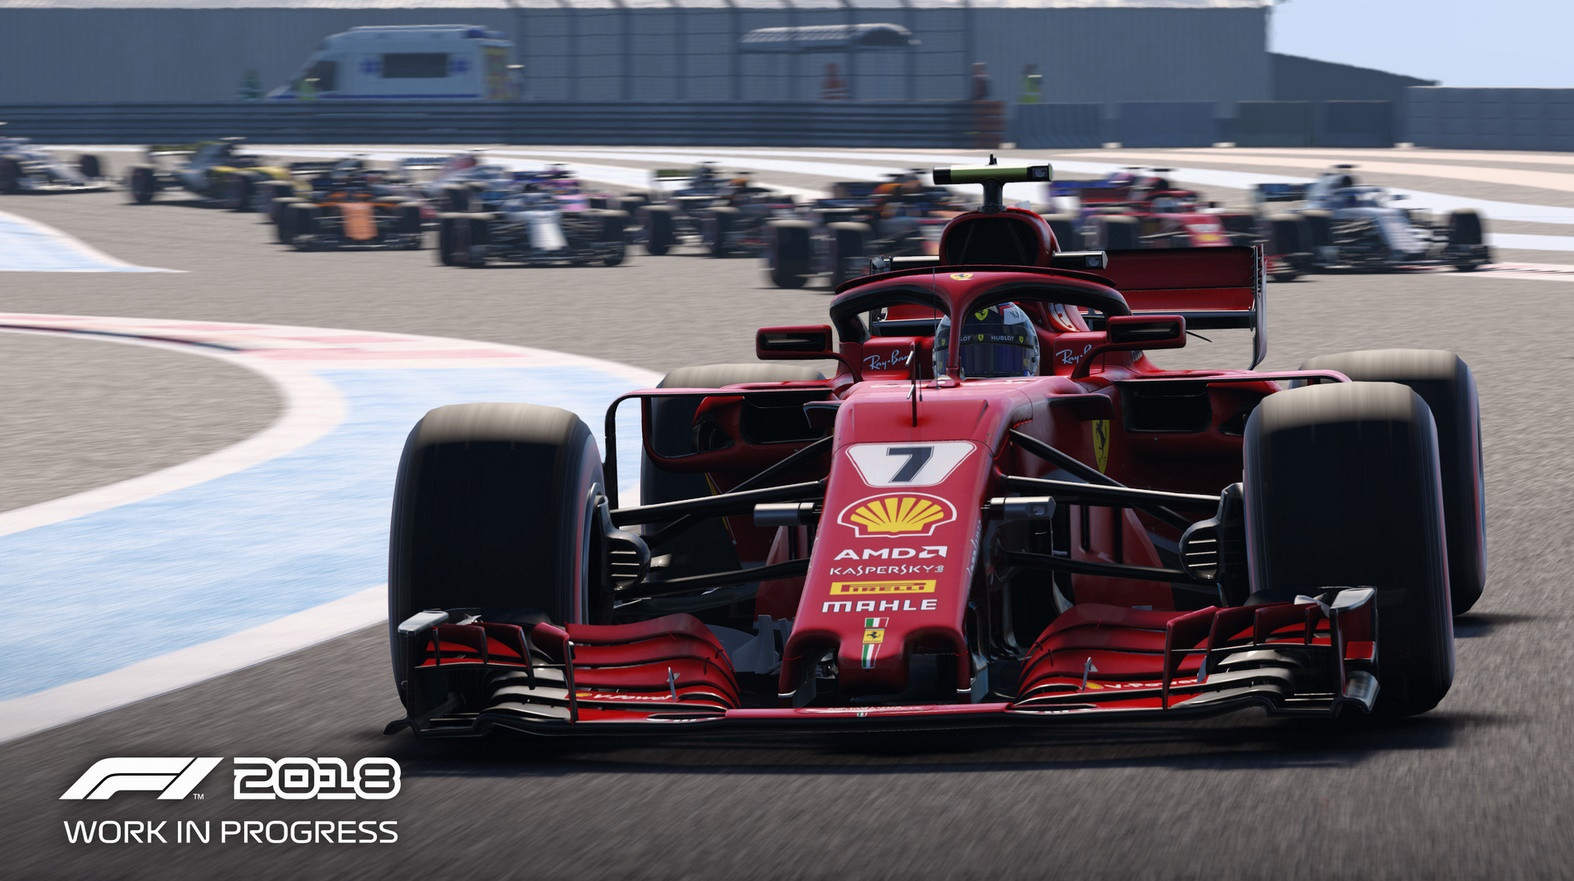 ชมภาพสกรีนช็อตรถแข่งตัวแรงจากเกม F1 2018